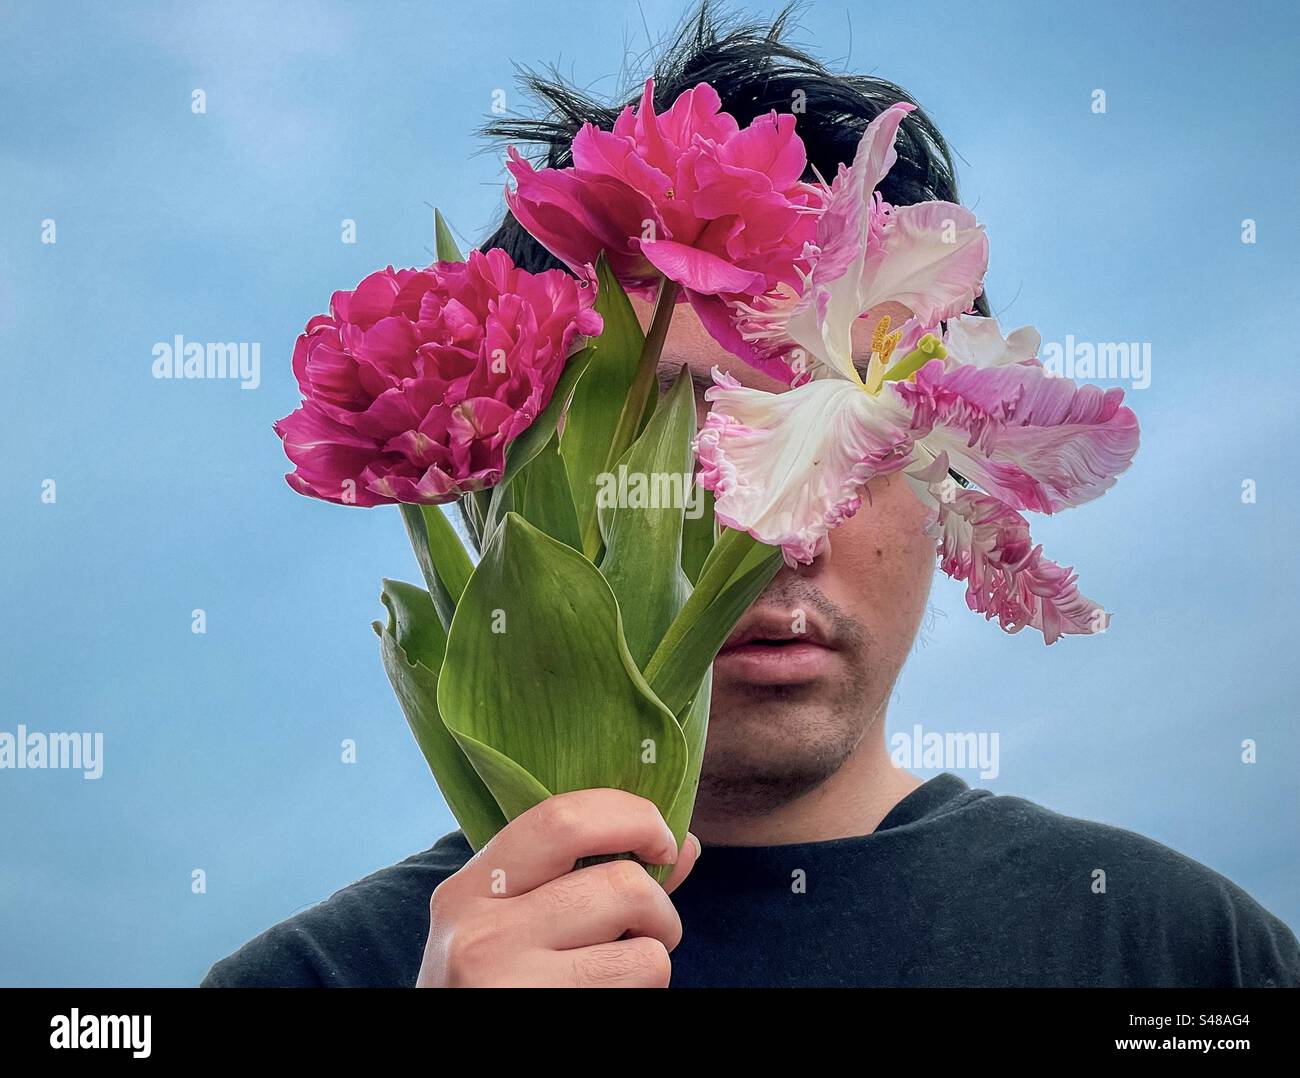 Jeune homme tenant un bouquet de tulipes roses, doubles et perroquets devant son visage contre le ciel bleu. Visage obscurci. Thème du printemps. Banque D'Images